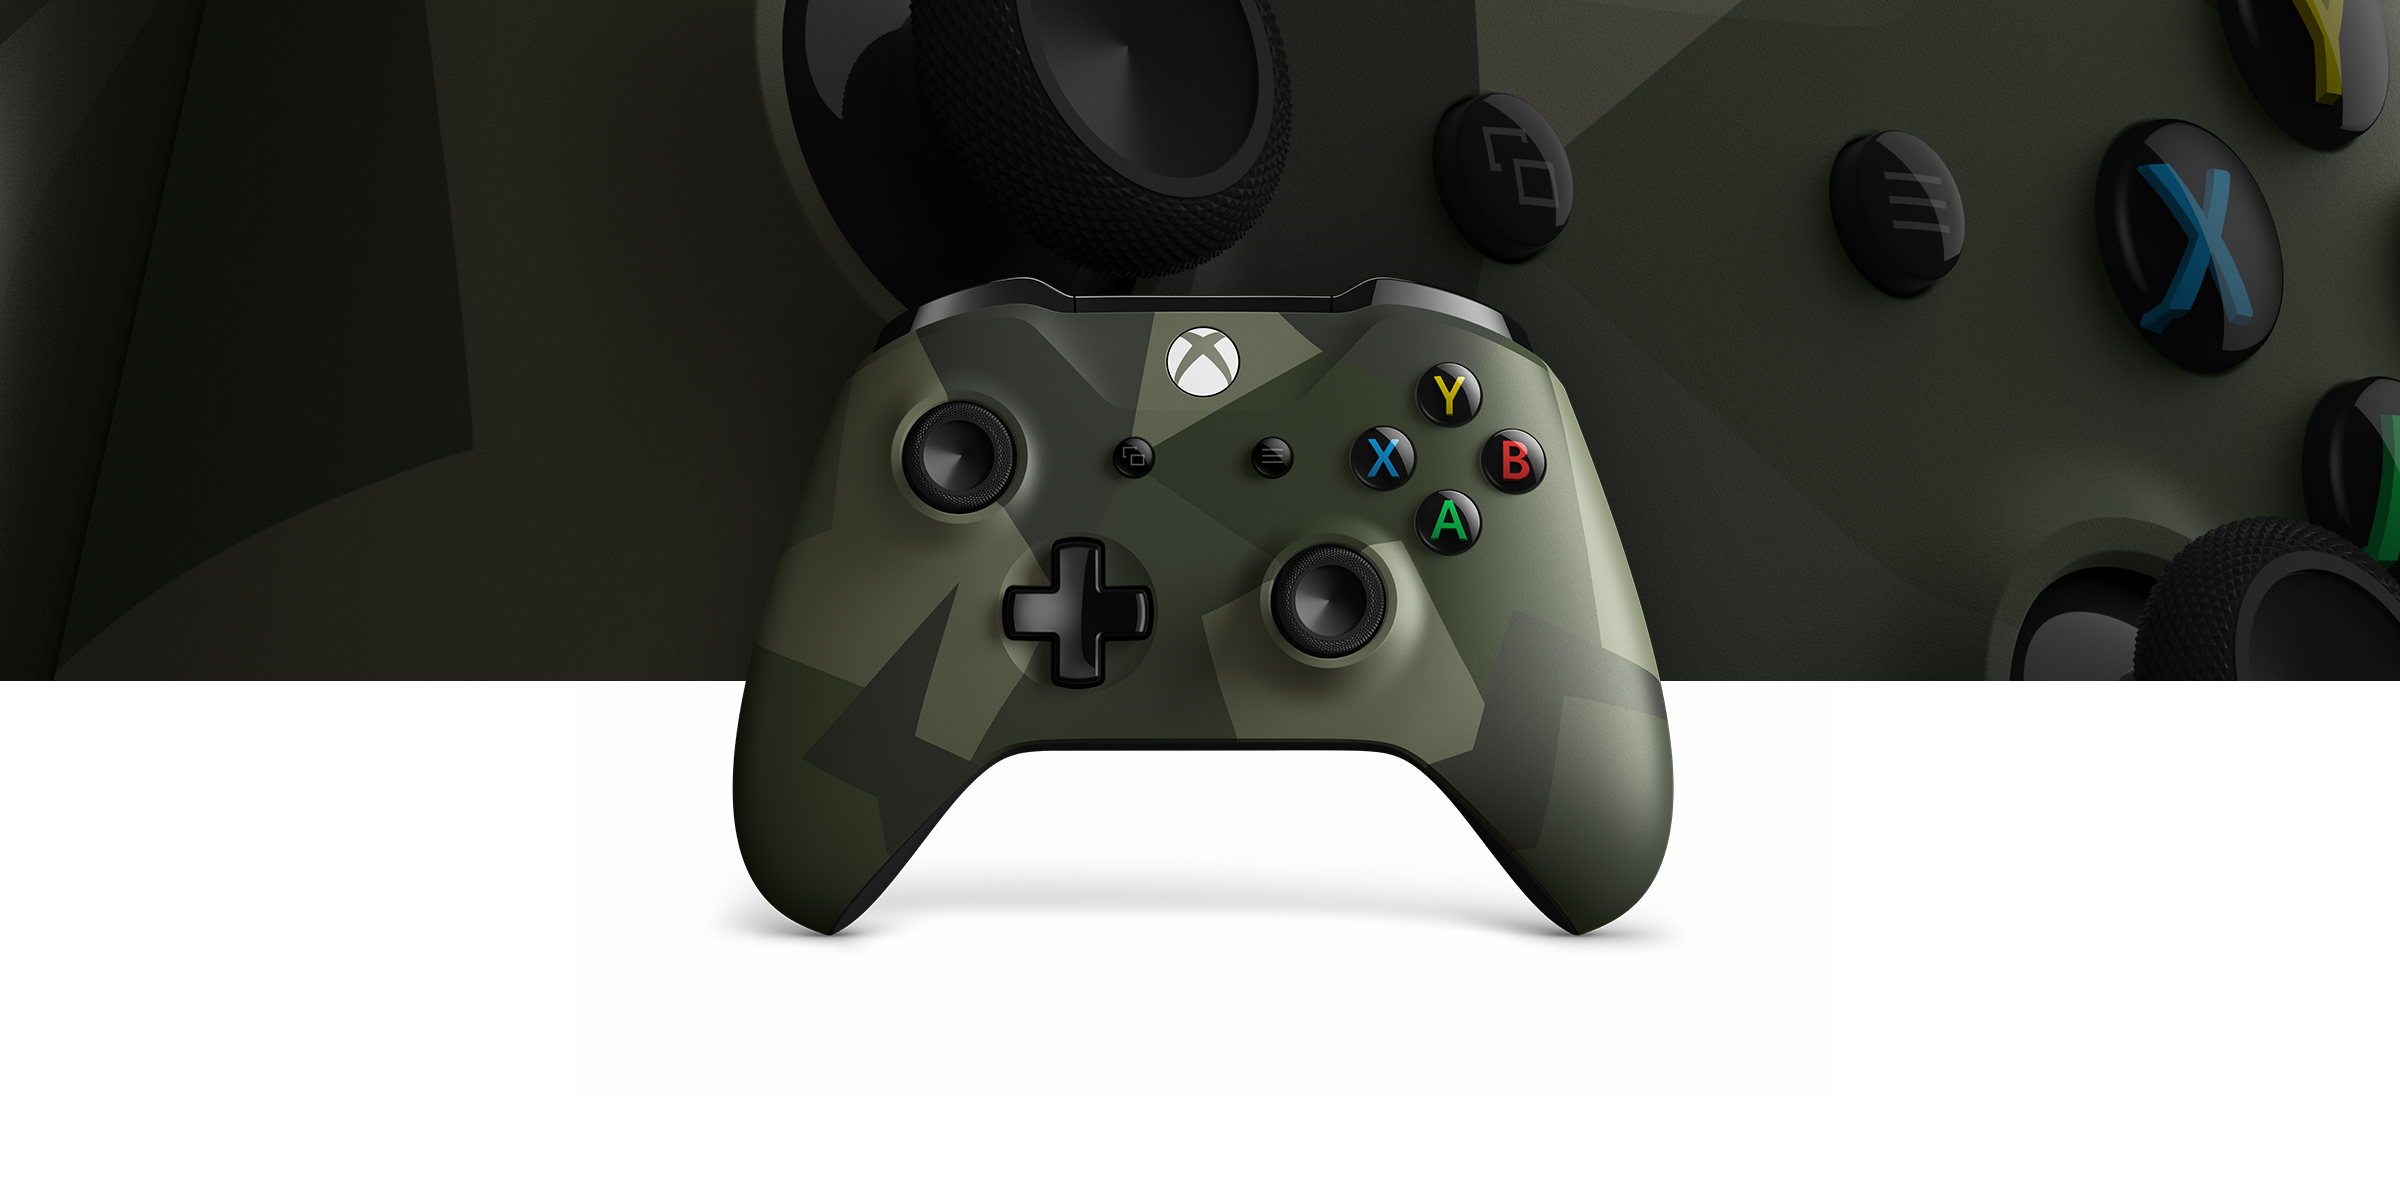 vertrekken Opsommen handicap Xbox Wireless Controller – Armed Forces II Special Edition